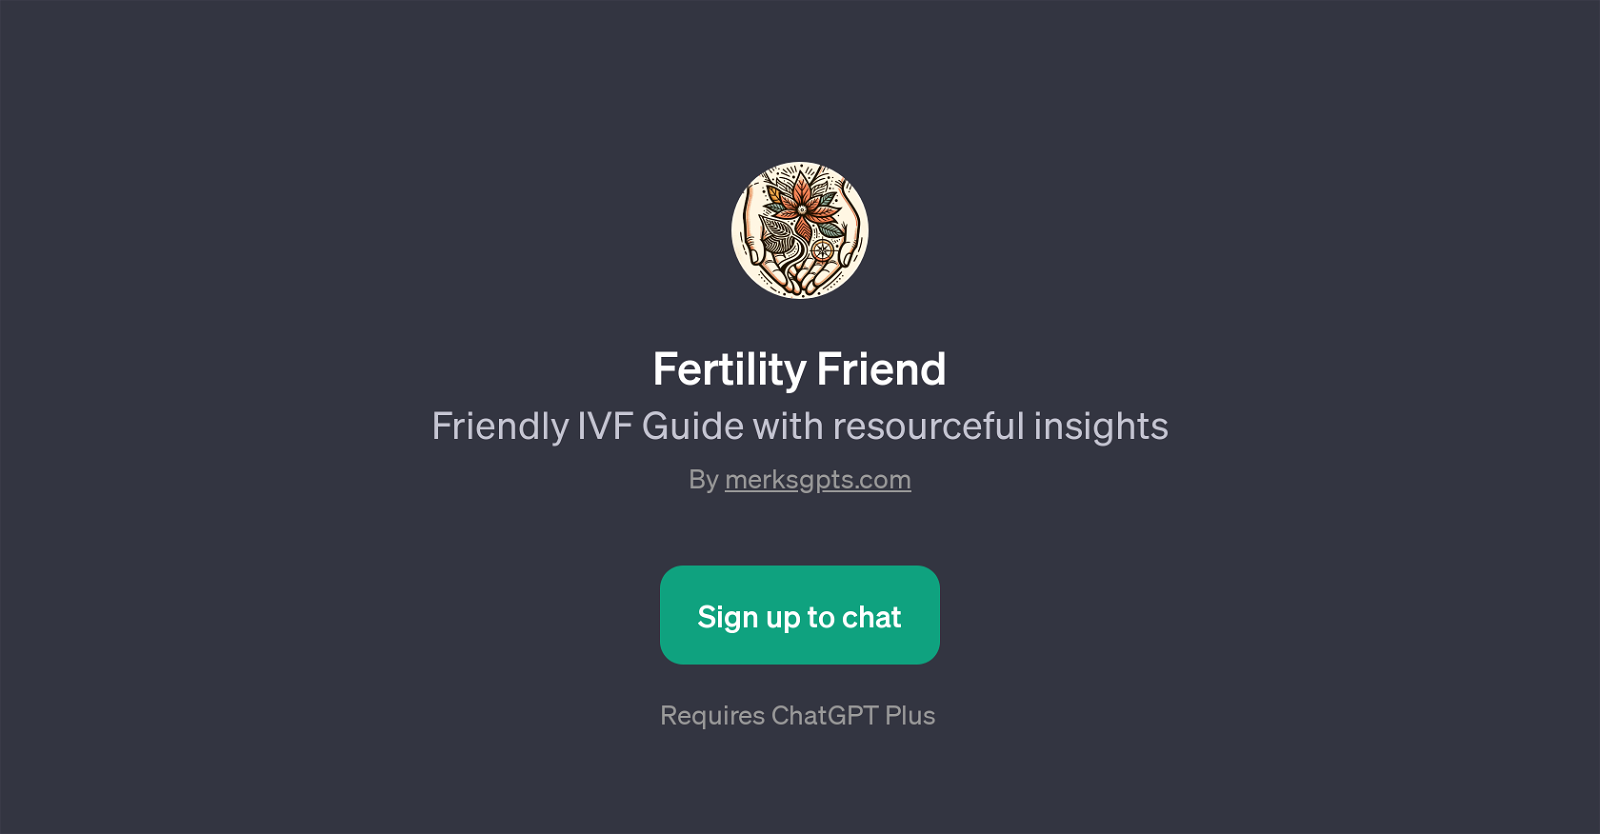 Fertility Friend website